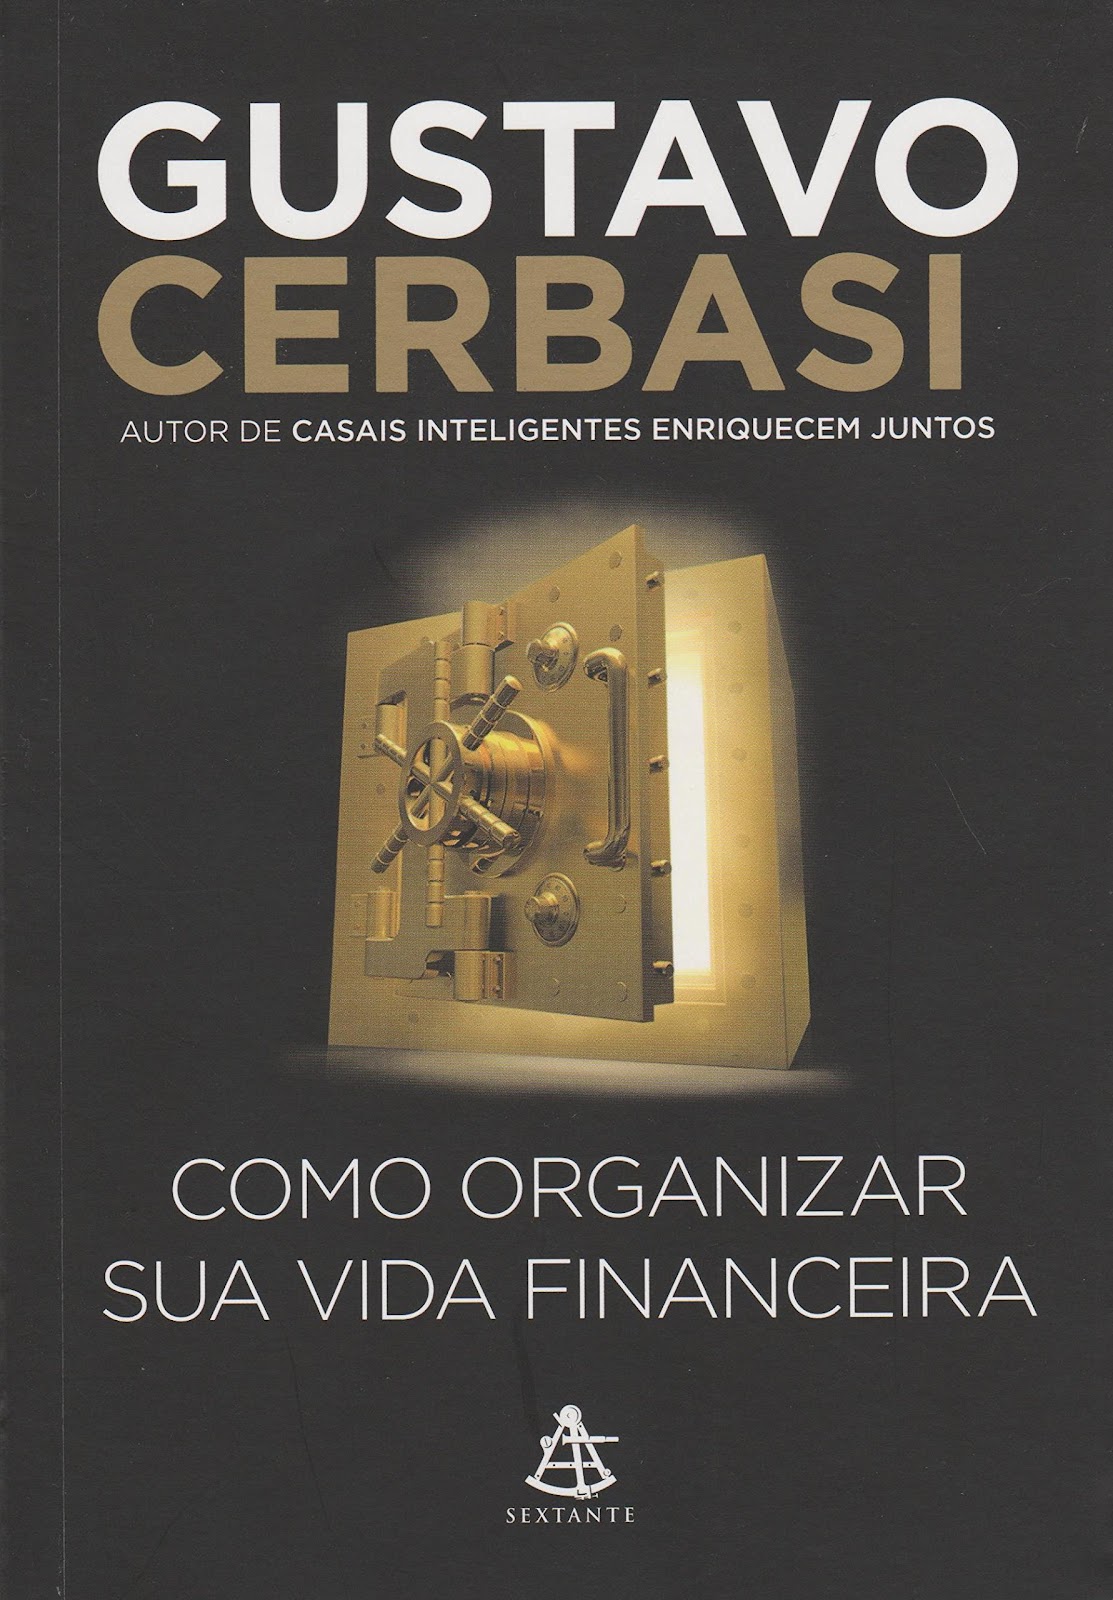 Libro “Como Organizar Sua Vida Financeira”